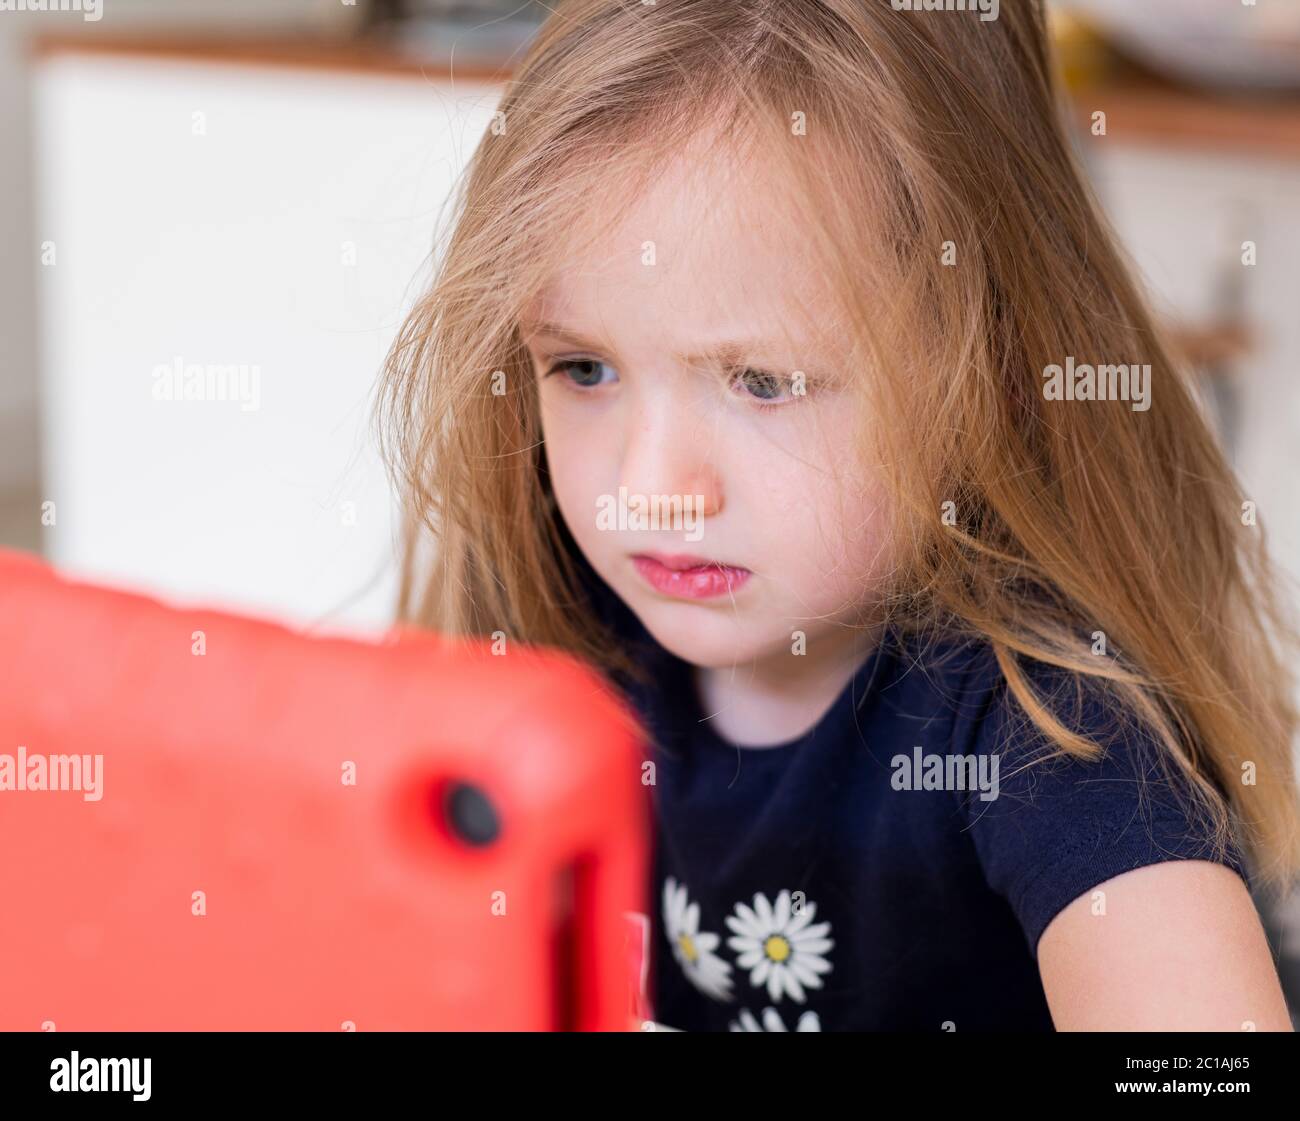 Kleines Mädchen, das etwas auf einem Tablet, Blick aufmerksam auf den Bildschirm, lange dunkelblonde Haare, Pre-School-Kind Blick auf Tablet Stockfoto